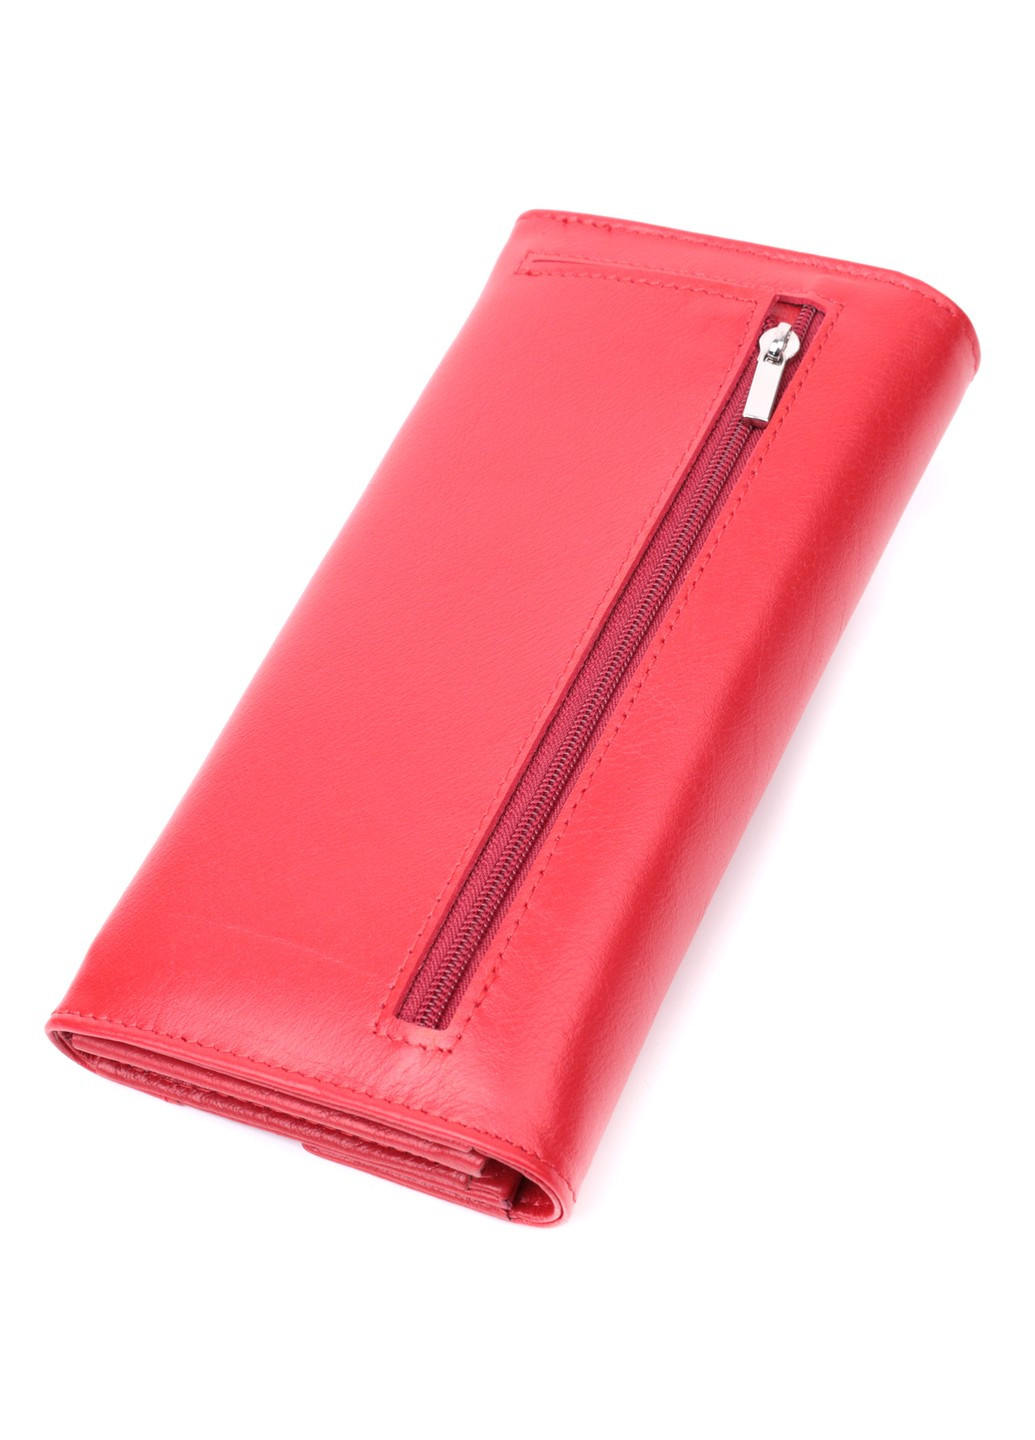 Женский кошелек с геометрическим клапаном из натуральной кожи 22545 Красный st leather (277980435)